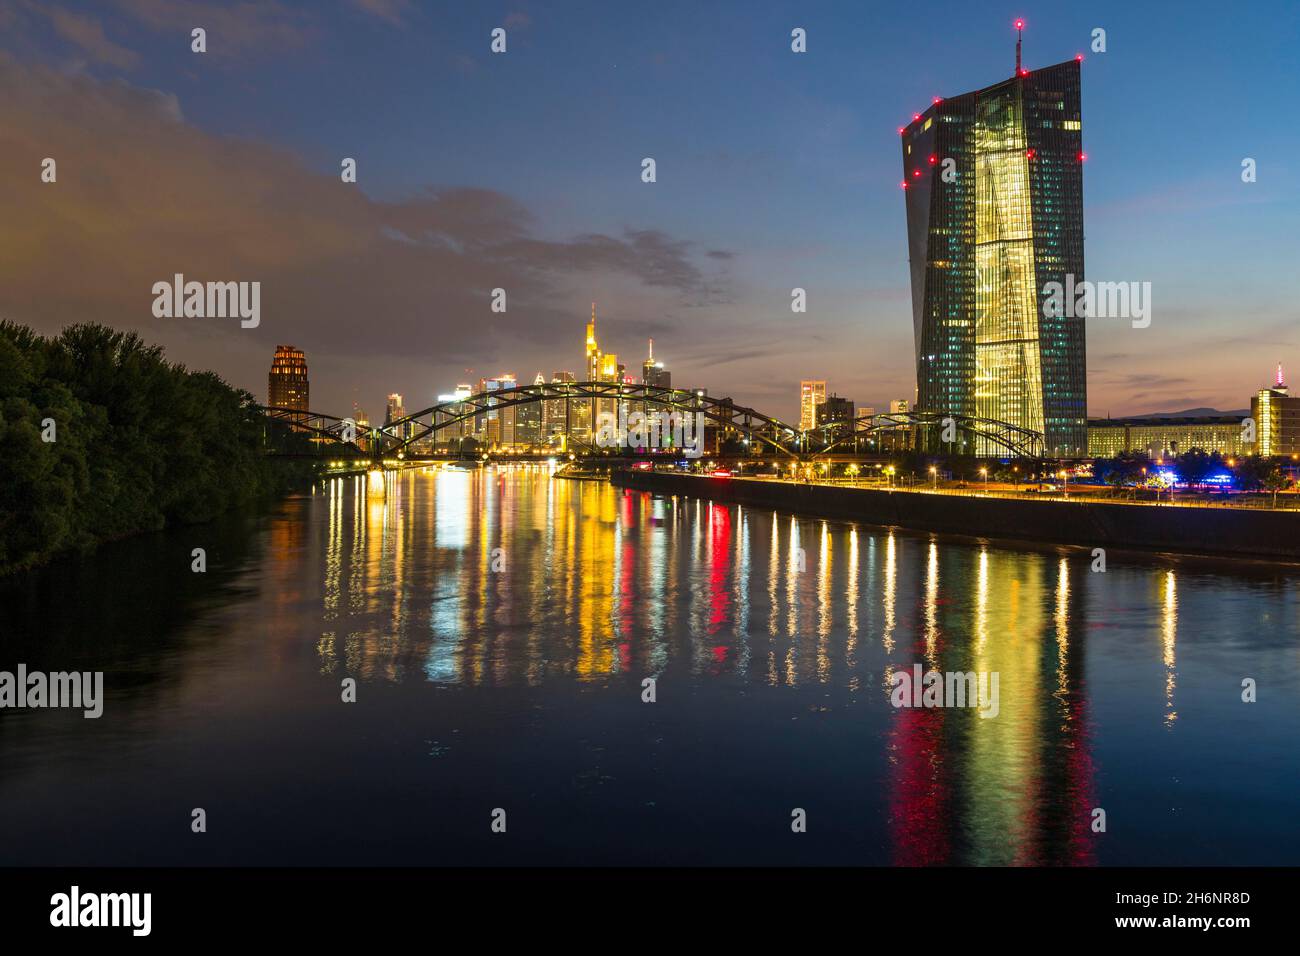 Banca Centrale europea illuminata, BCE e skyline colorato di Francoforte riflessi nel fiume meno durante il tramonto tardivo da Arthur-von-Vineyard-Steg Foto Stock